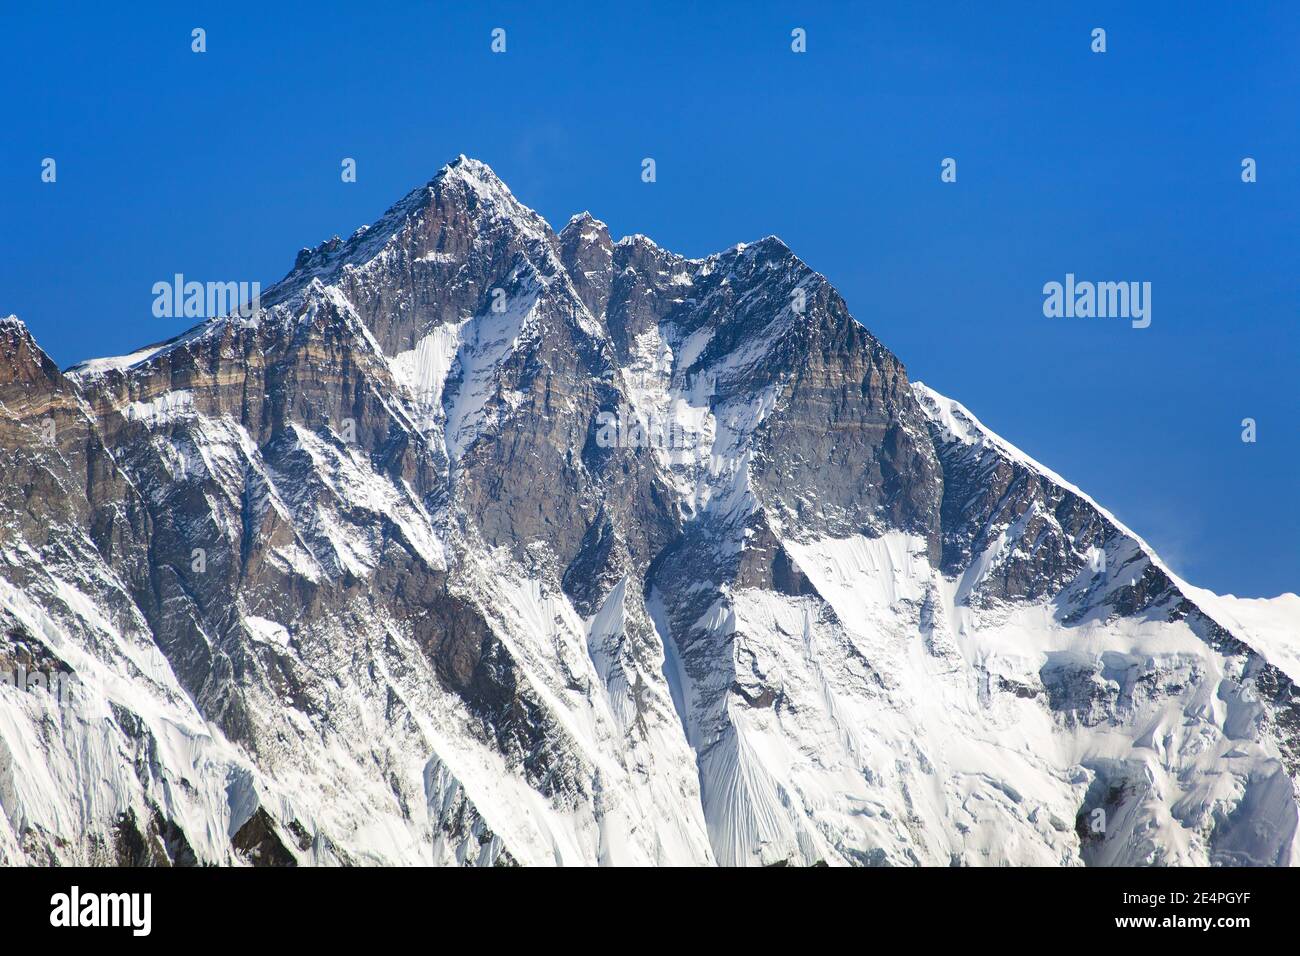 Vue sur le sommet de Lhotse, face rocheuse Sud - chemin vers le camp de base de l'Everest, randonnée à trois passes, région de l'Everest, parc national de Sagarmatha, vallée de Khumbu, Népal Banque D'Images